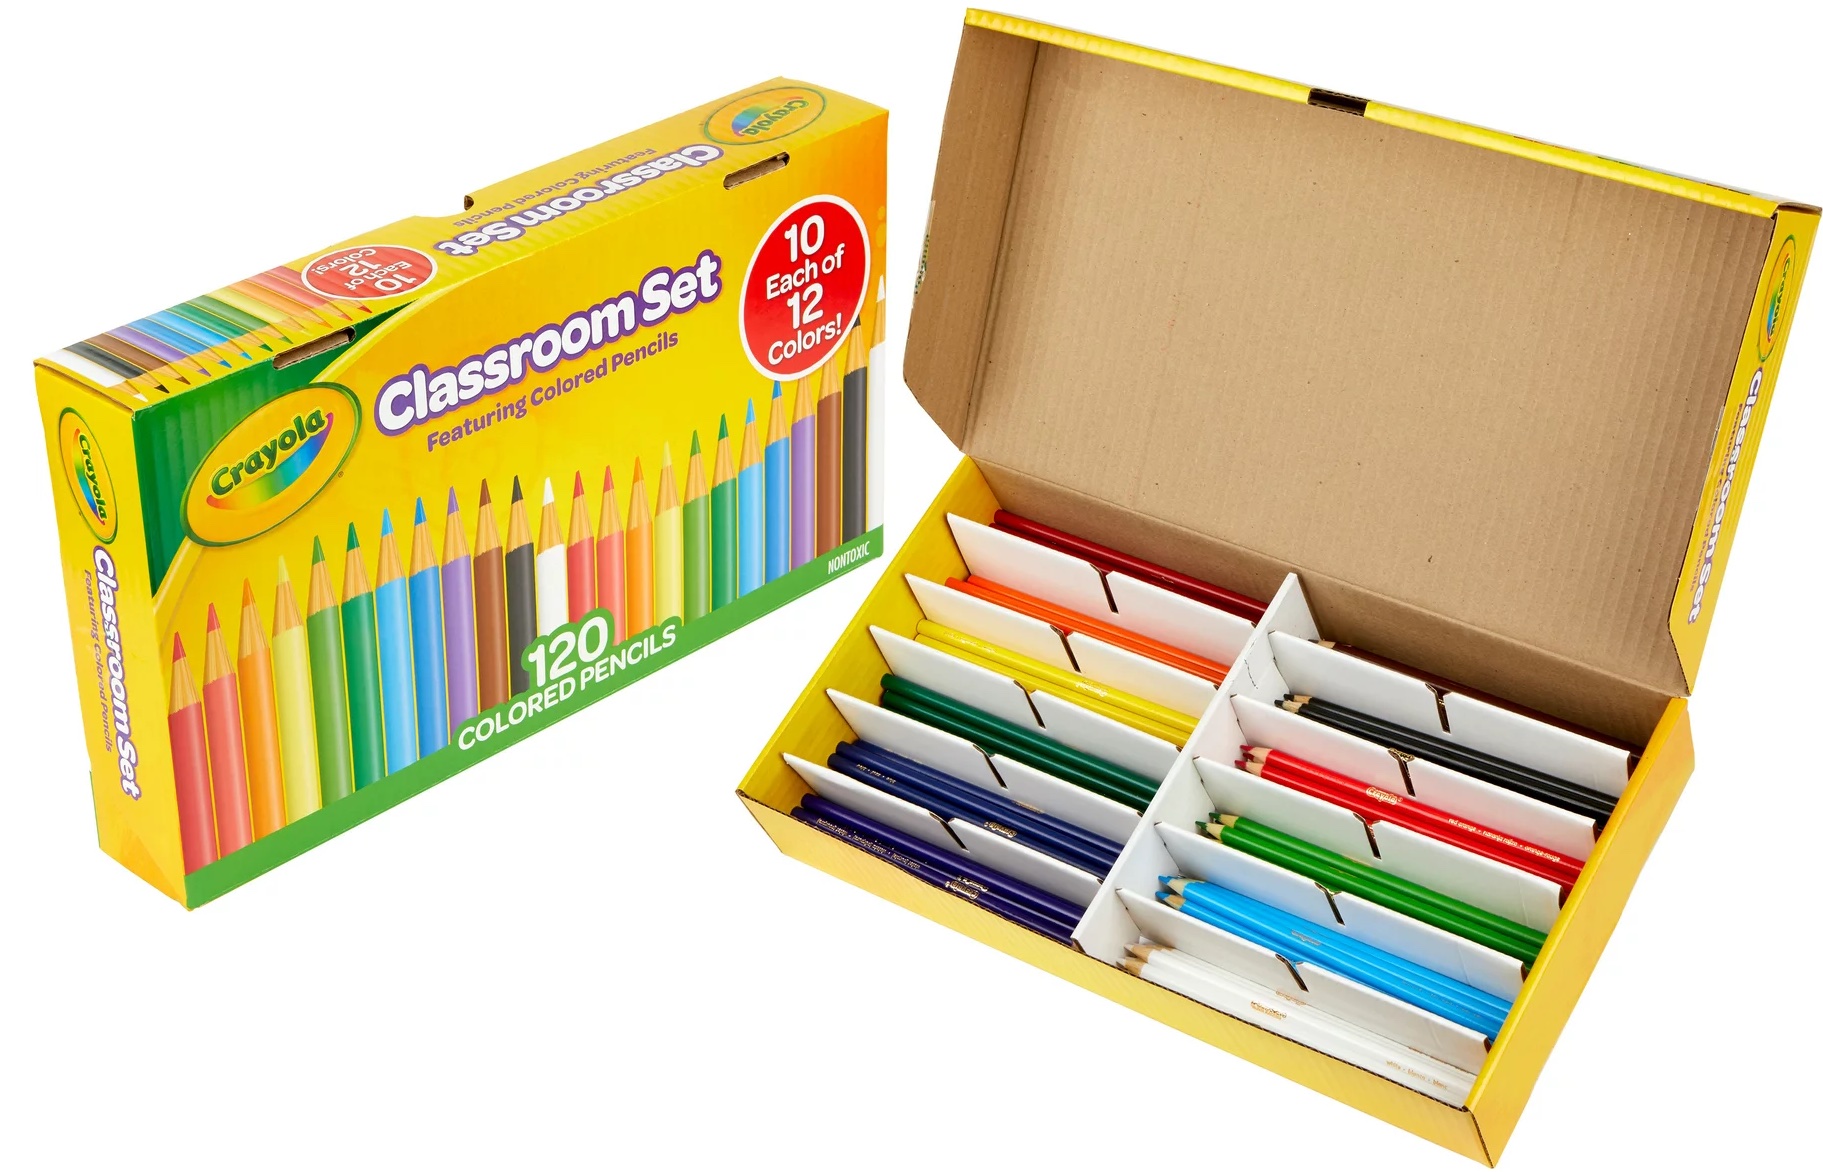 Crayola Colored Pencils copy